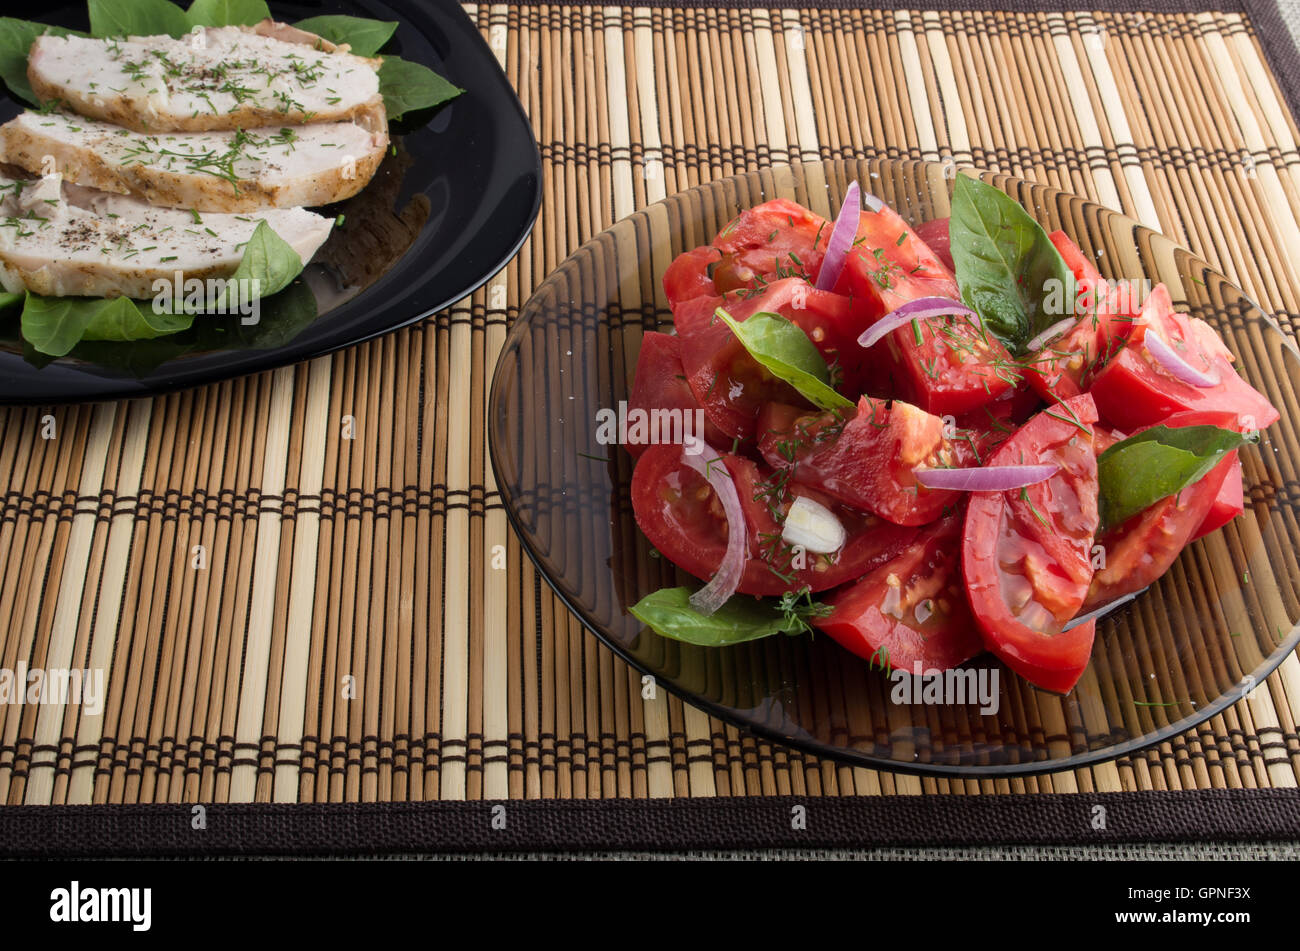 Examen avec un repas fait maison - une salade de tomate verte décoré de feuilles de basilic et de tranches de poulet cuit sur une bande Banque D'Images